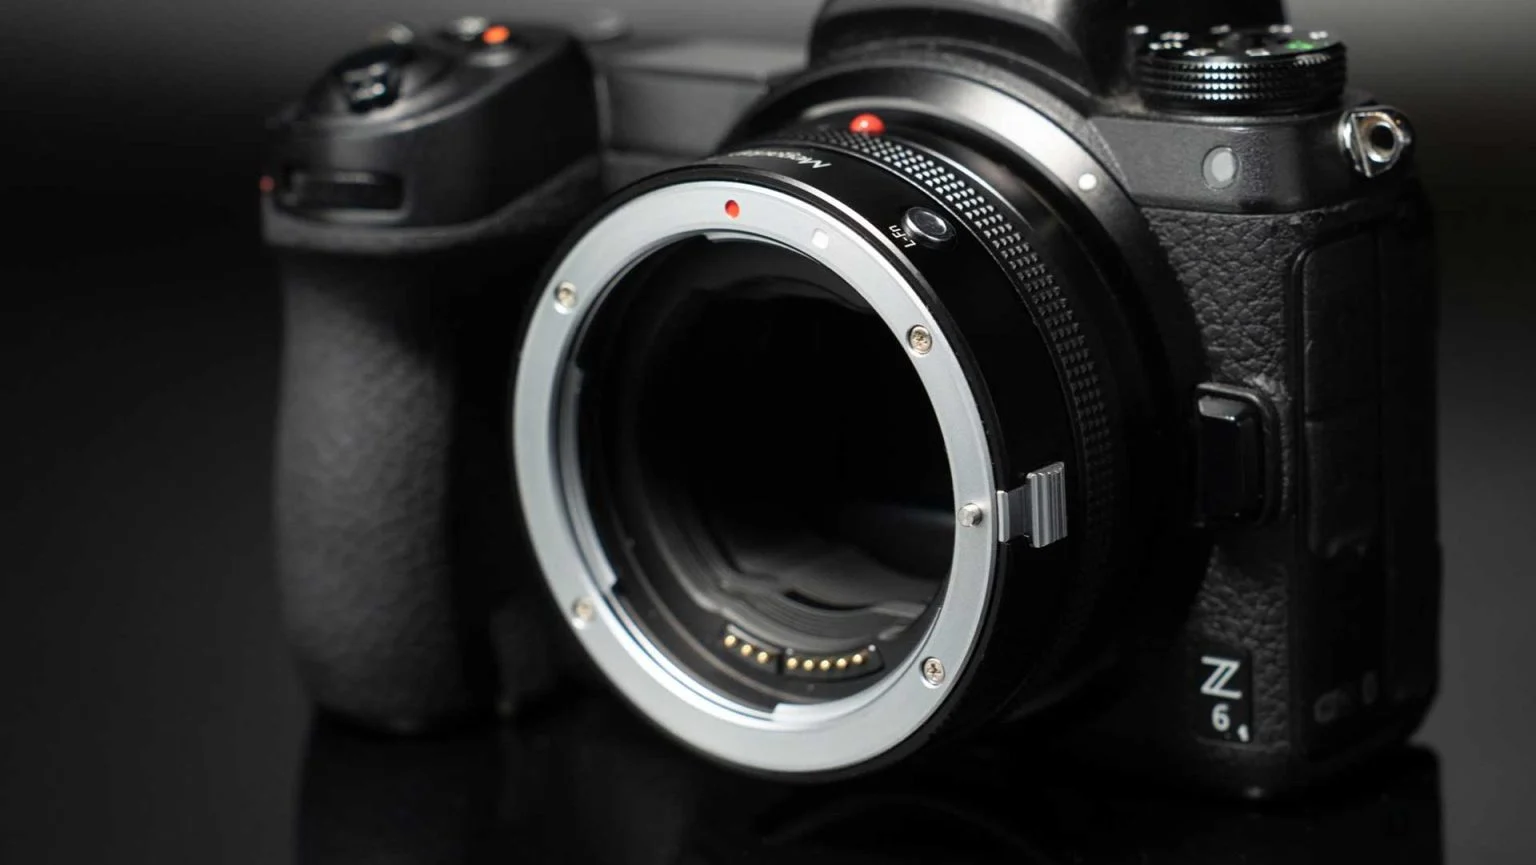 Adaptor Megadap EFTZ21 Dirilis, Bisa Membuat Lensa Canon EF Terpasang di Kamera Nikon Z Anda.